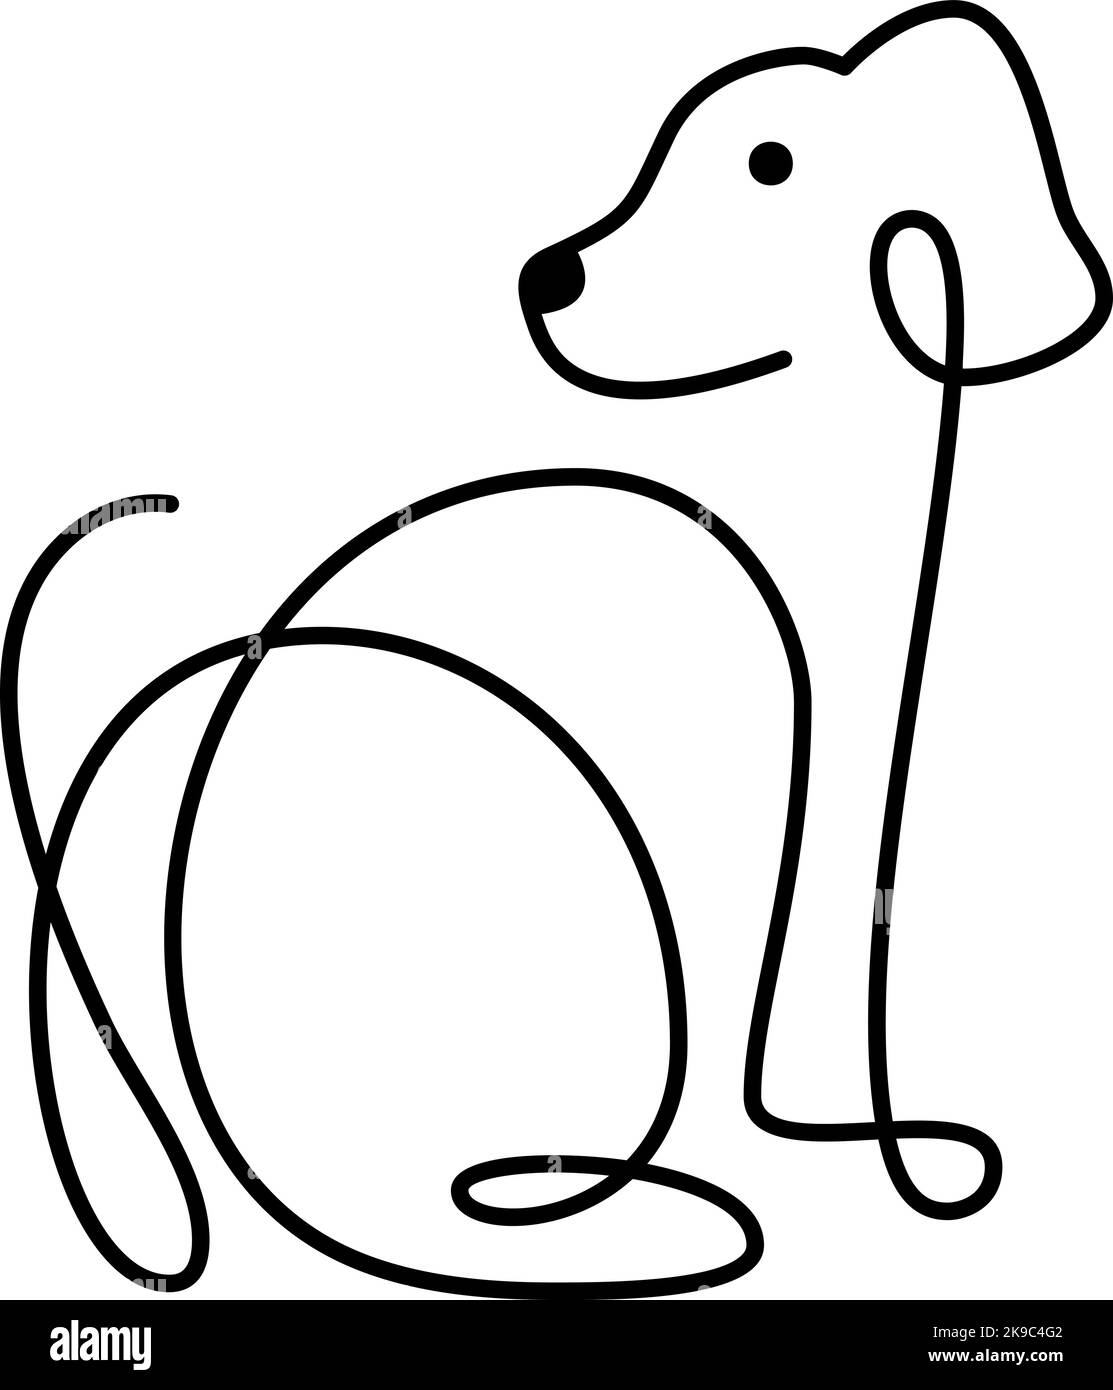 Niedliches ein-Linien-Vektor-Hundelogo. Minimalistisches Haustier im abstrakten handgezeichneten Stil, minimalistische Einlinizeichnung. Schönes abstraktes Minimal Stock Vektor